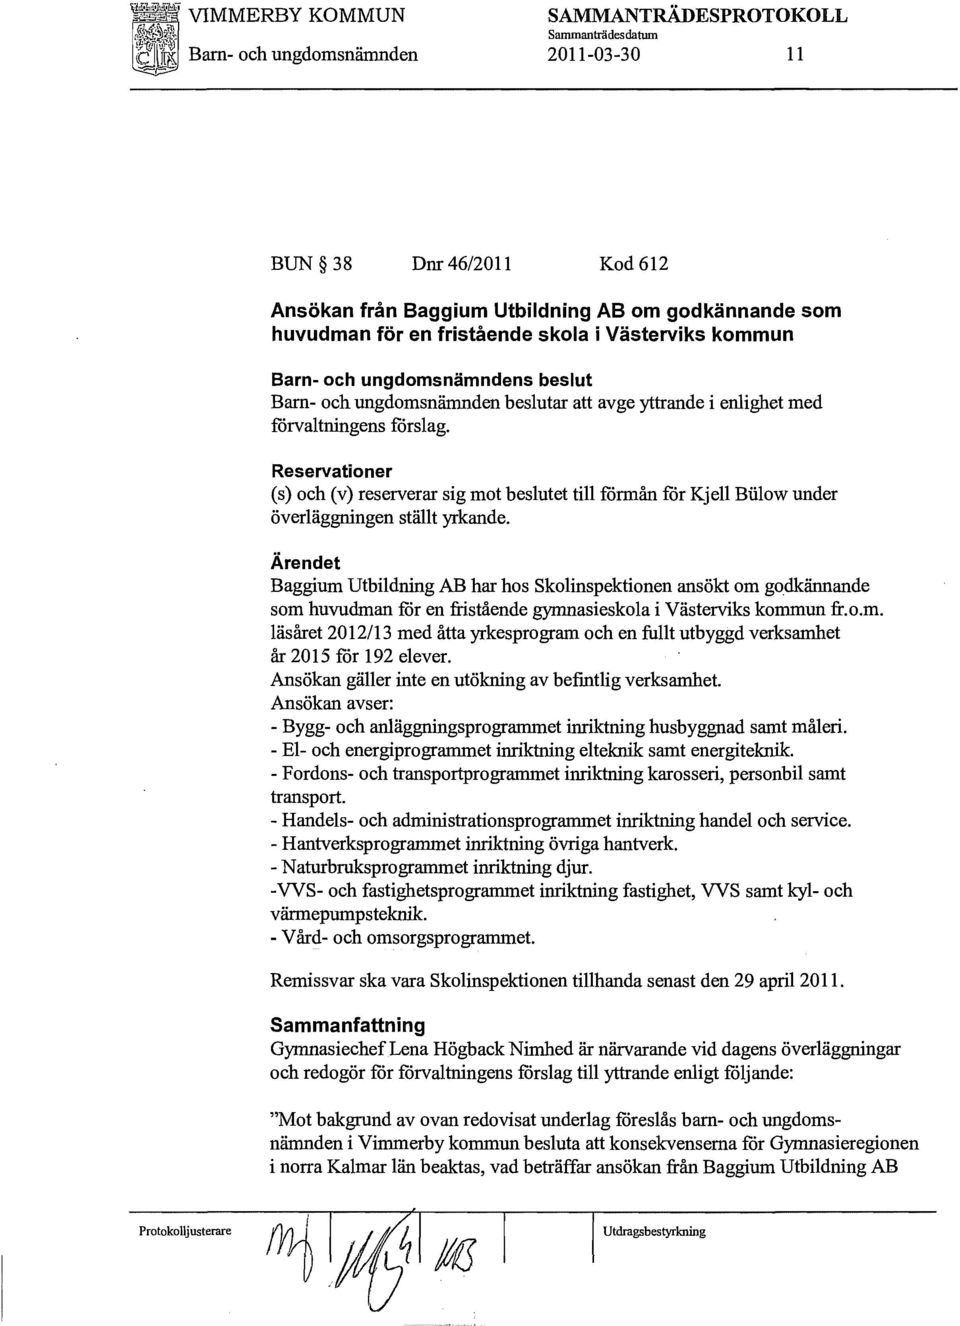 Reservationer (s) och (v) reserverar sig mot beslutet till förmån för Kjell Biilow under överläggningen ställt yrkande.